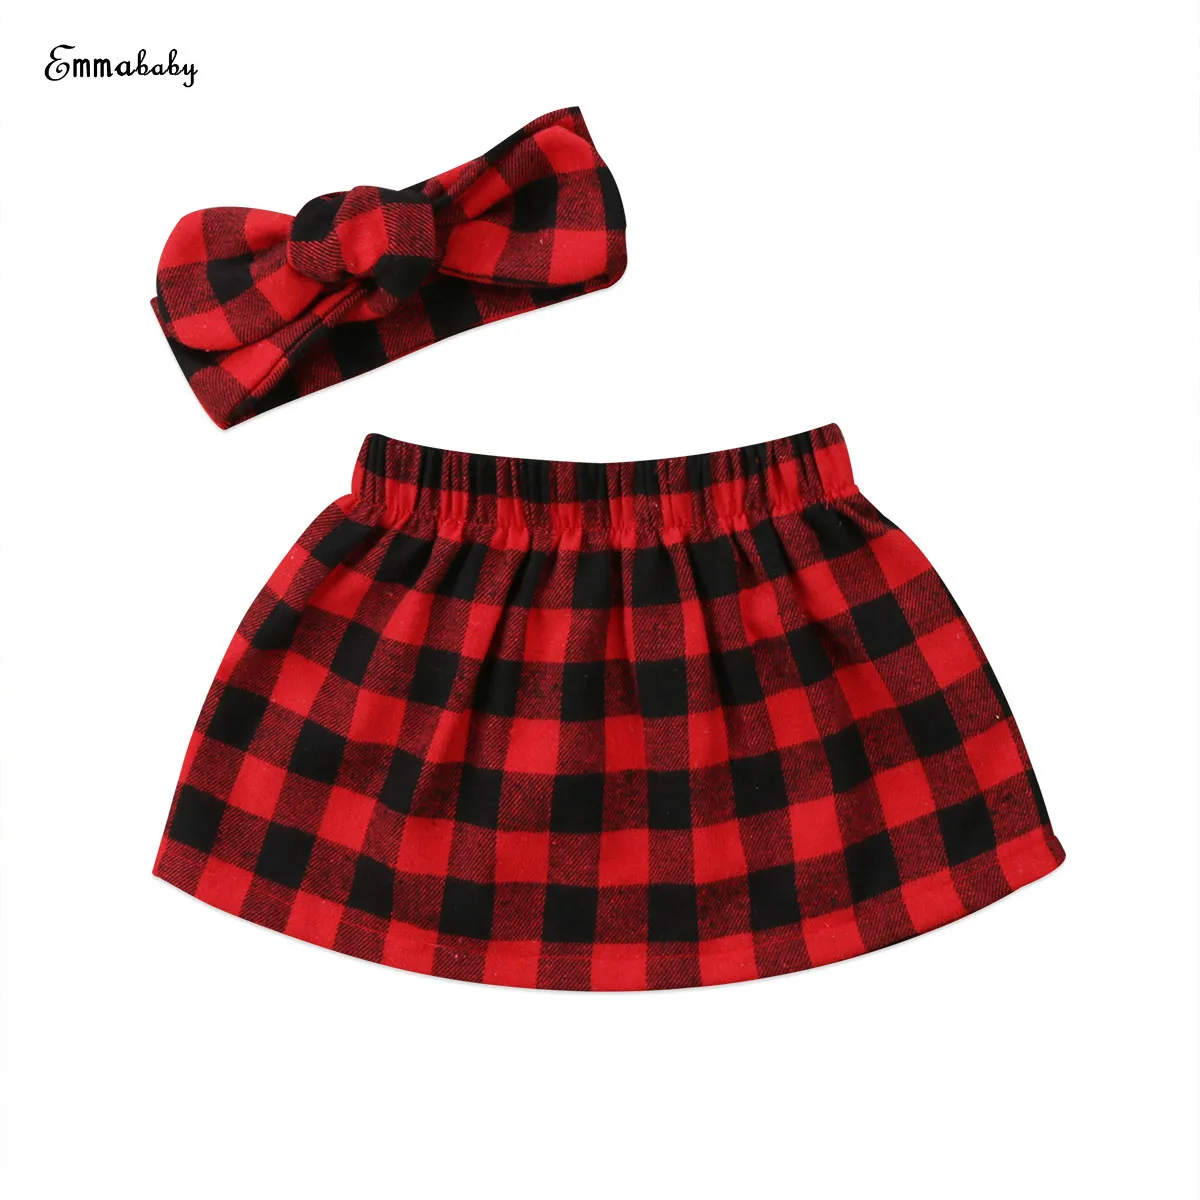 Emmaaby/Рождественская Одежда для новорожденных девочек; красная юбка в клетку с принтом; повязка на голову; комплект одежды из 2 предметов; красный цвет